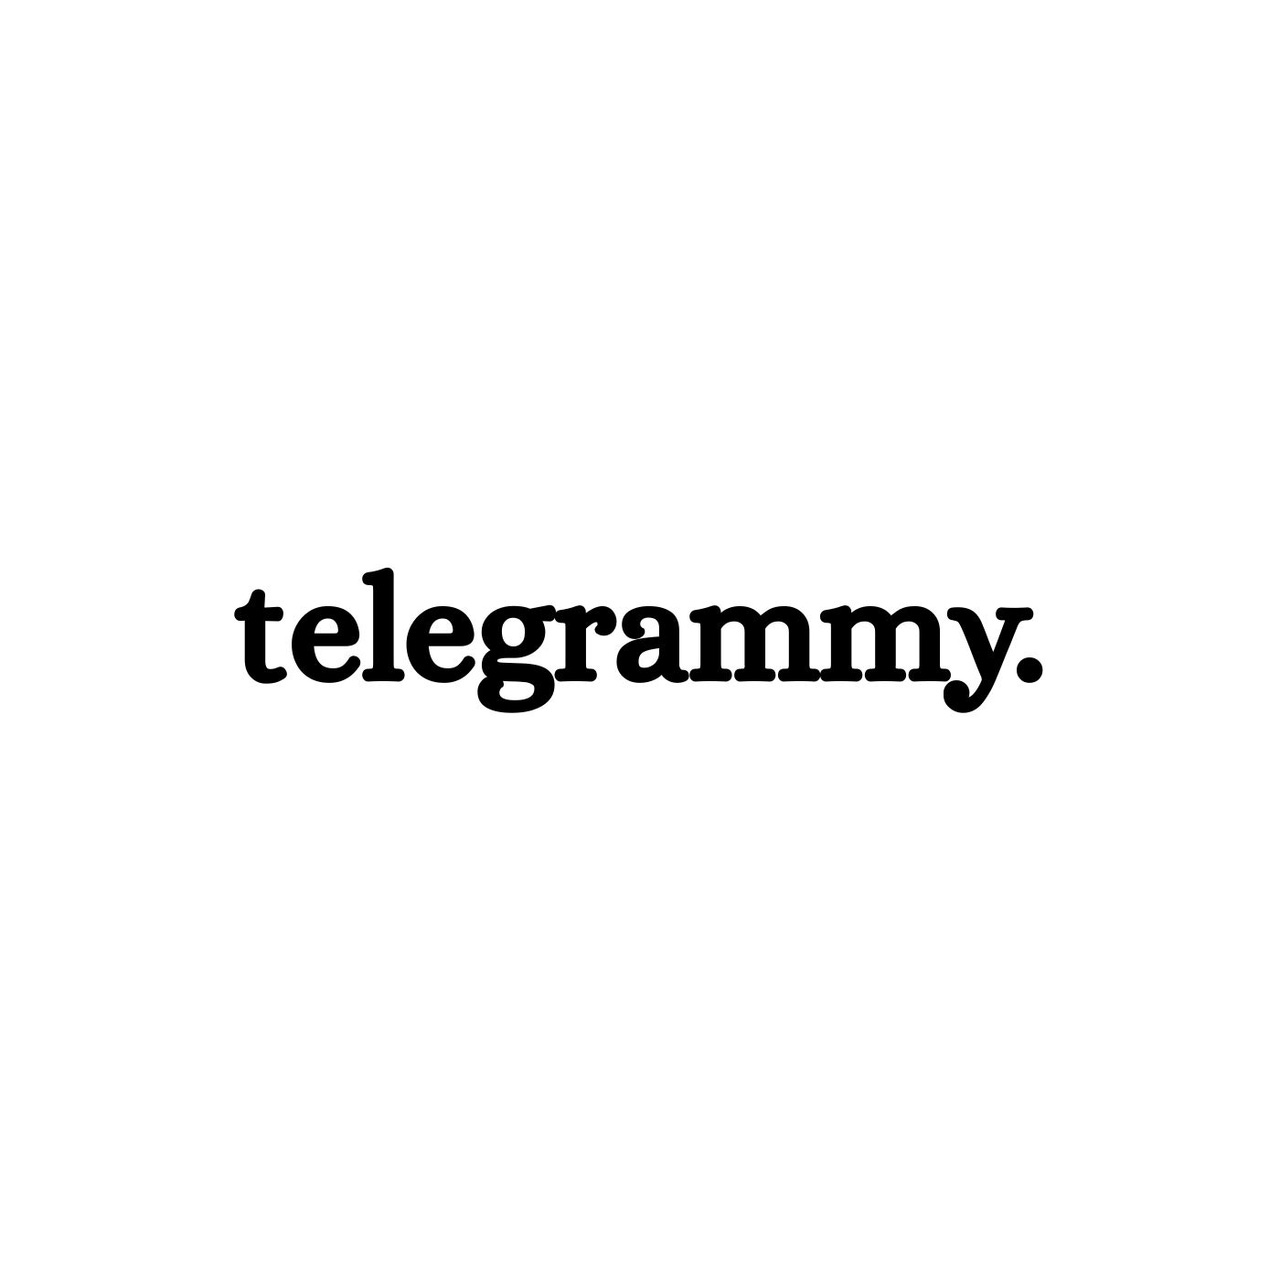 Artwork for telegrammy